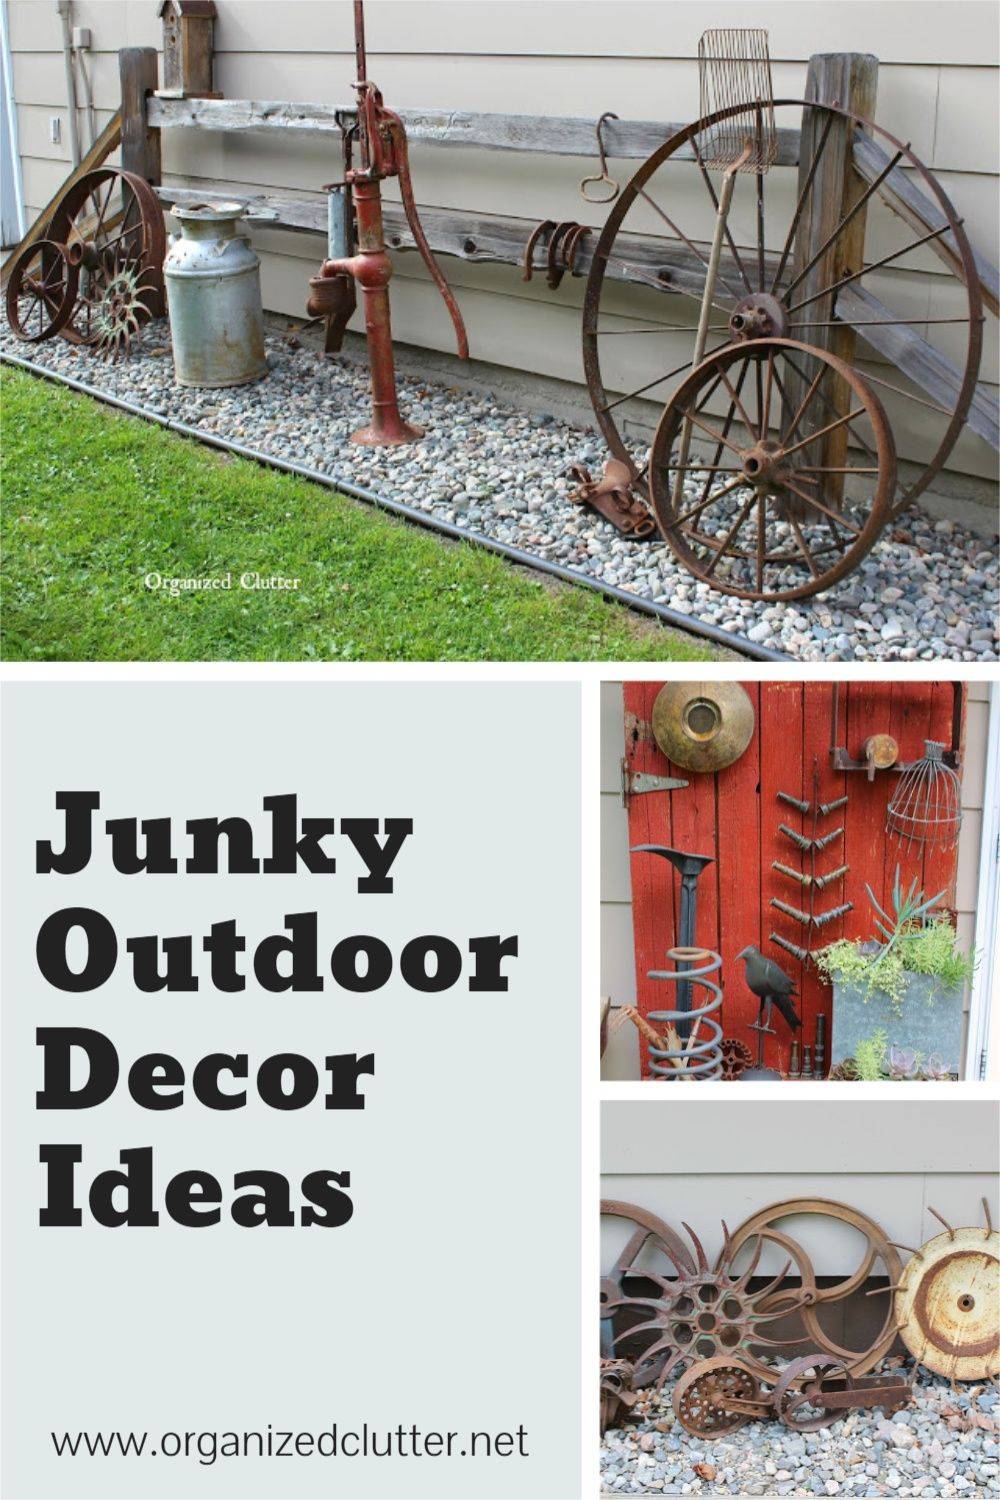 Creative Diy Whimsical Garden Junk Ideas